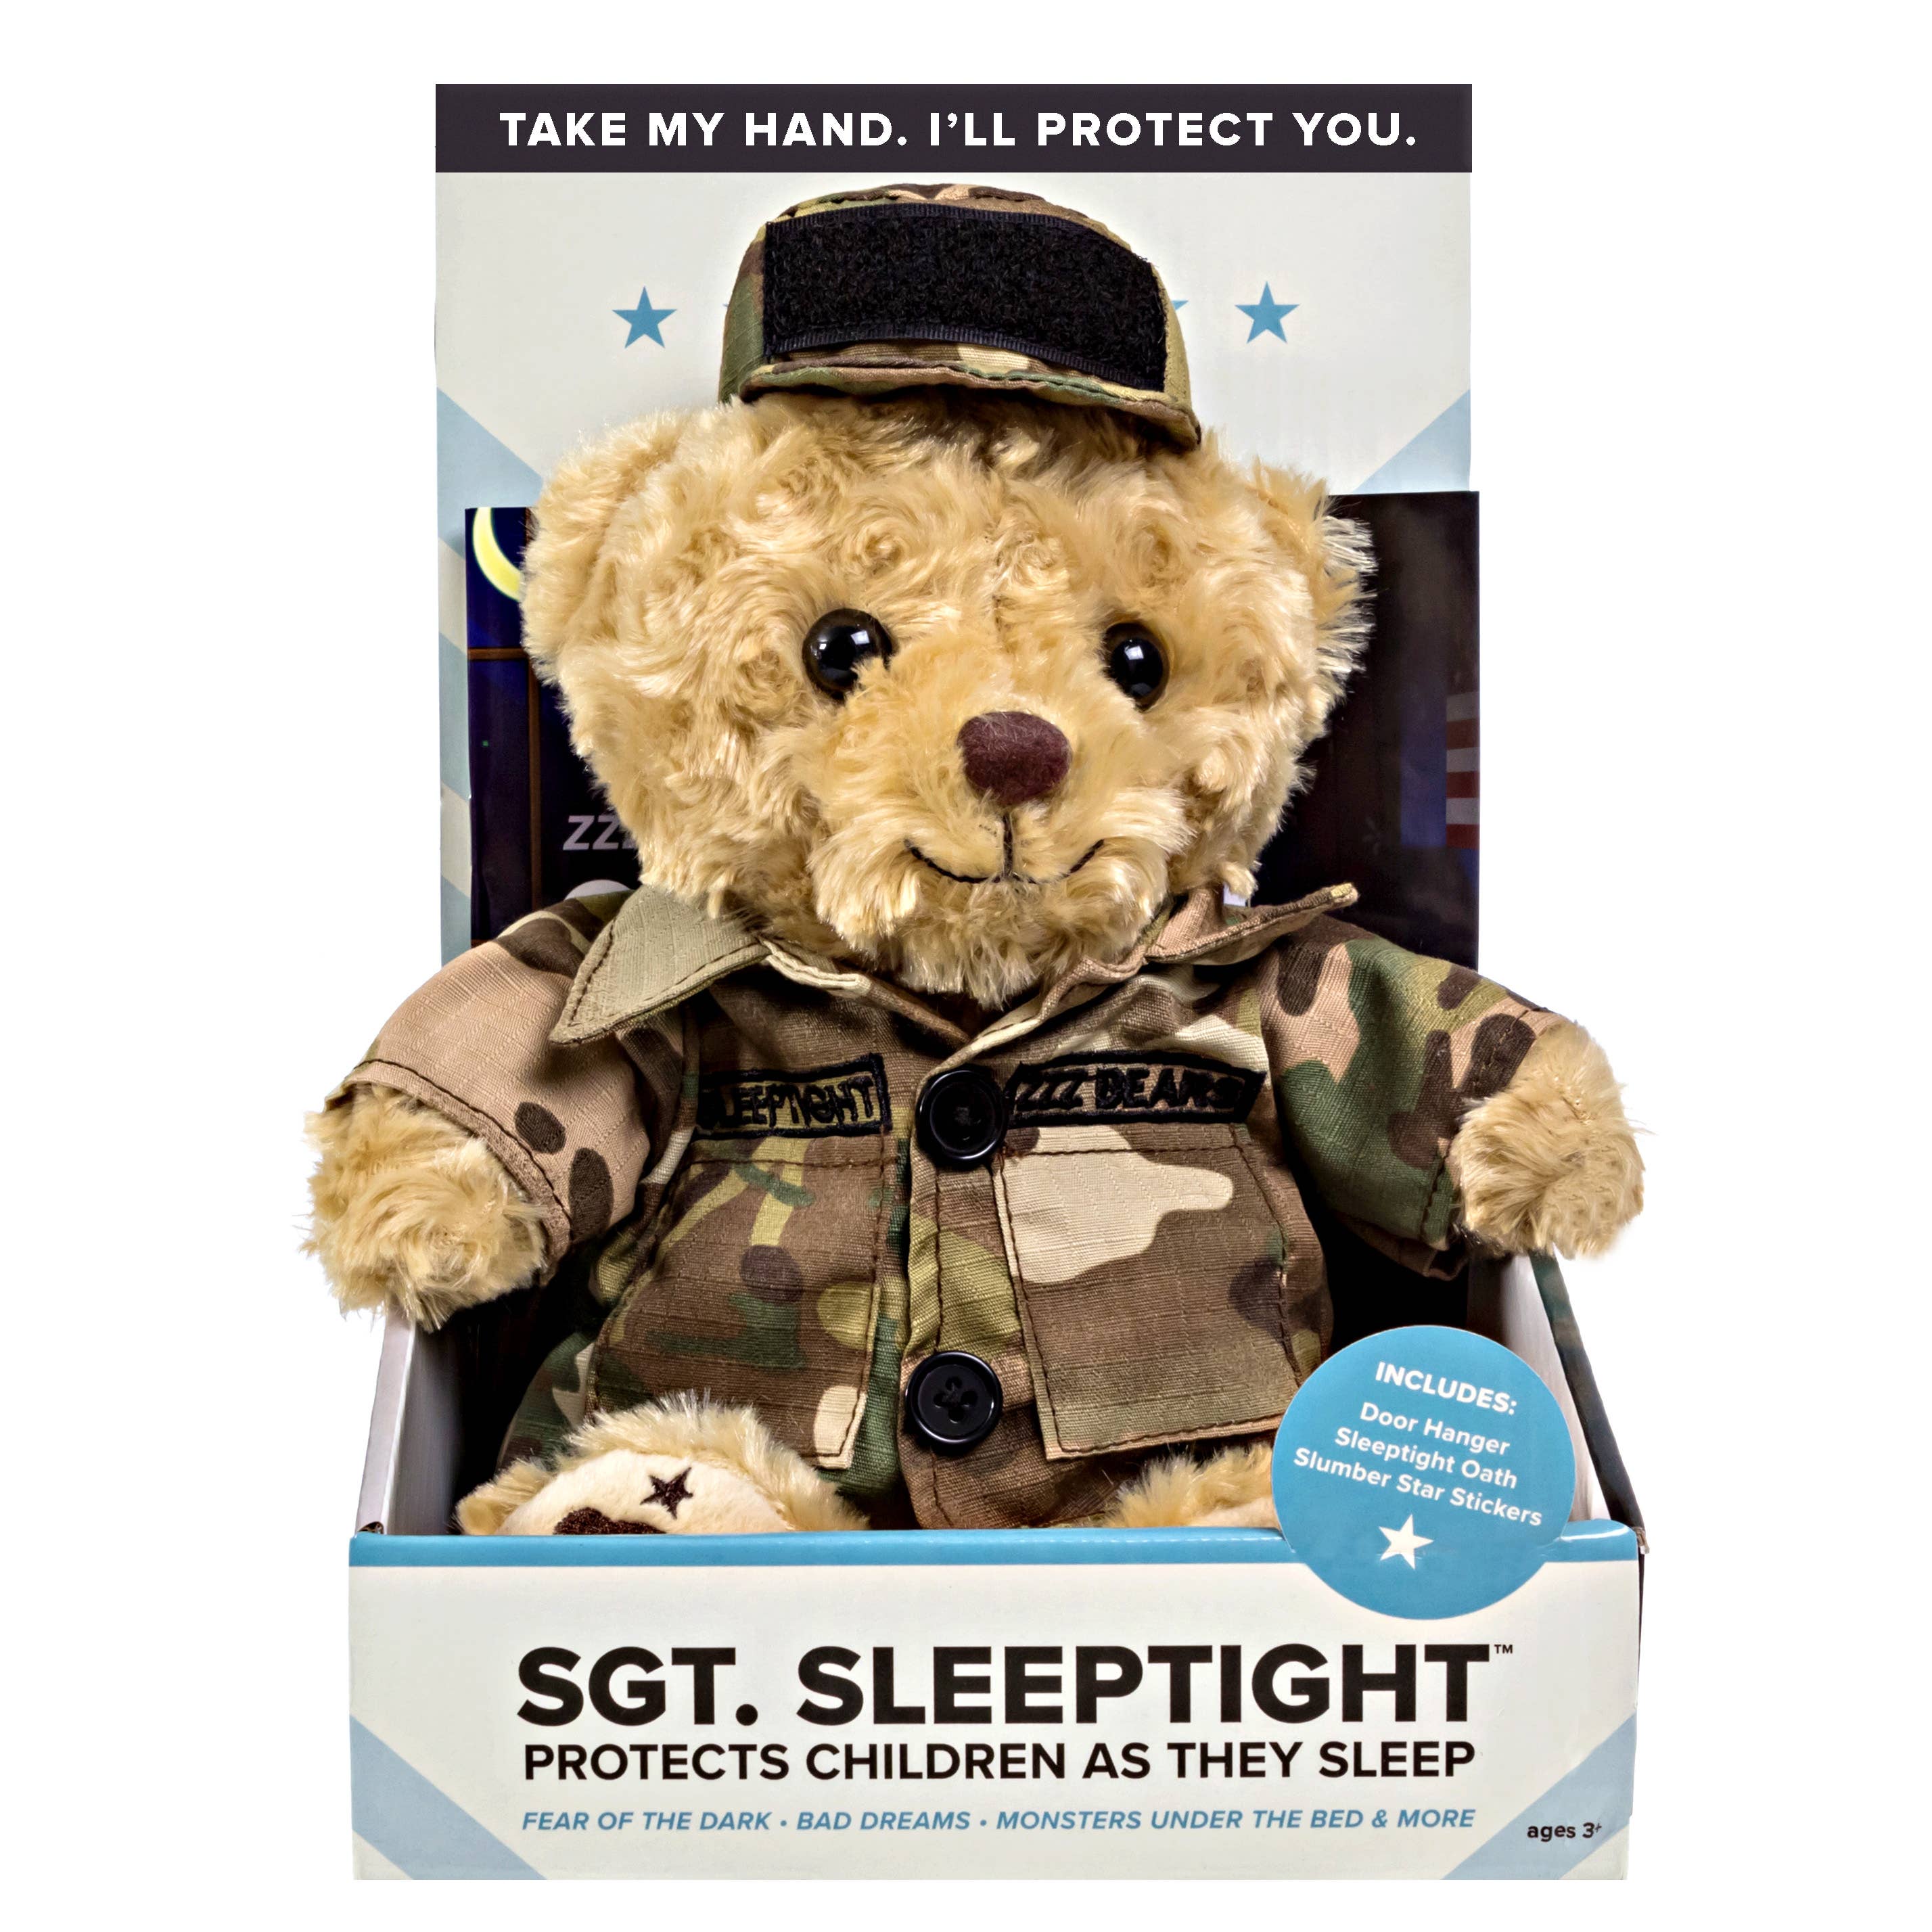 ZZZ Bears - Sgt. Sleeptight - Army - 15"